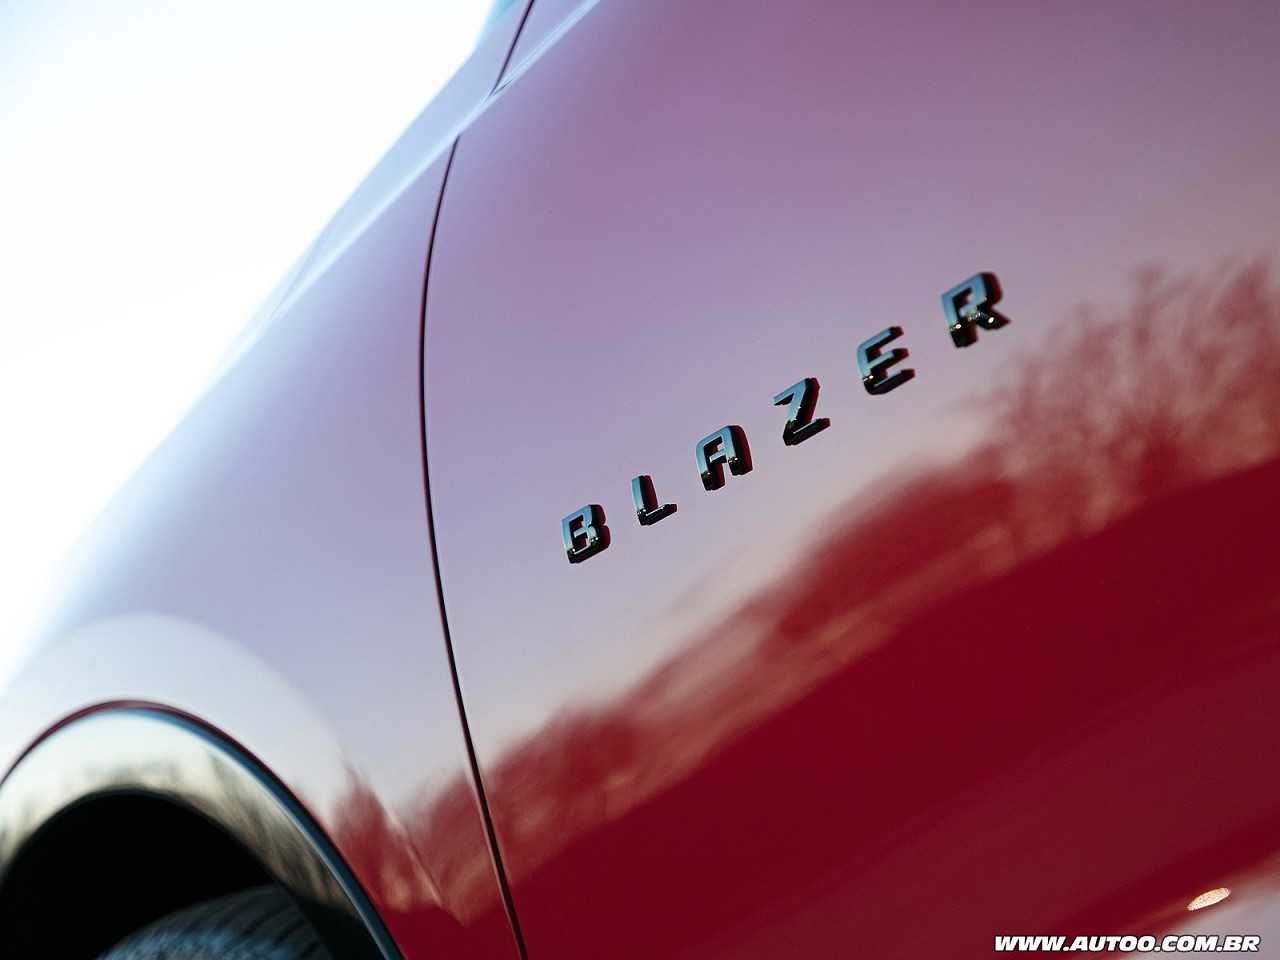 ChevroletBlazer 2019 - outros